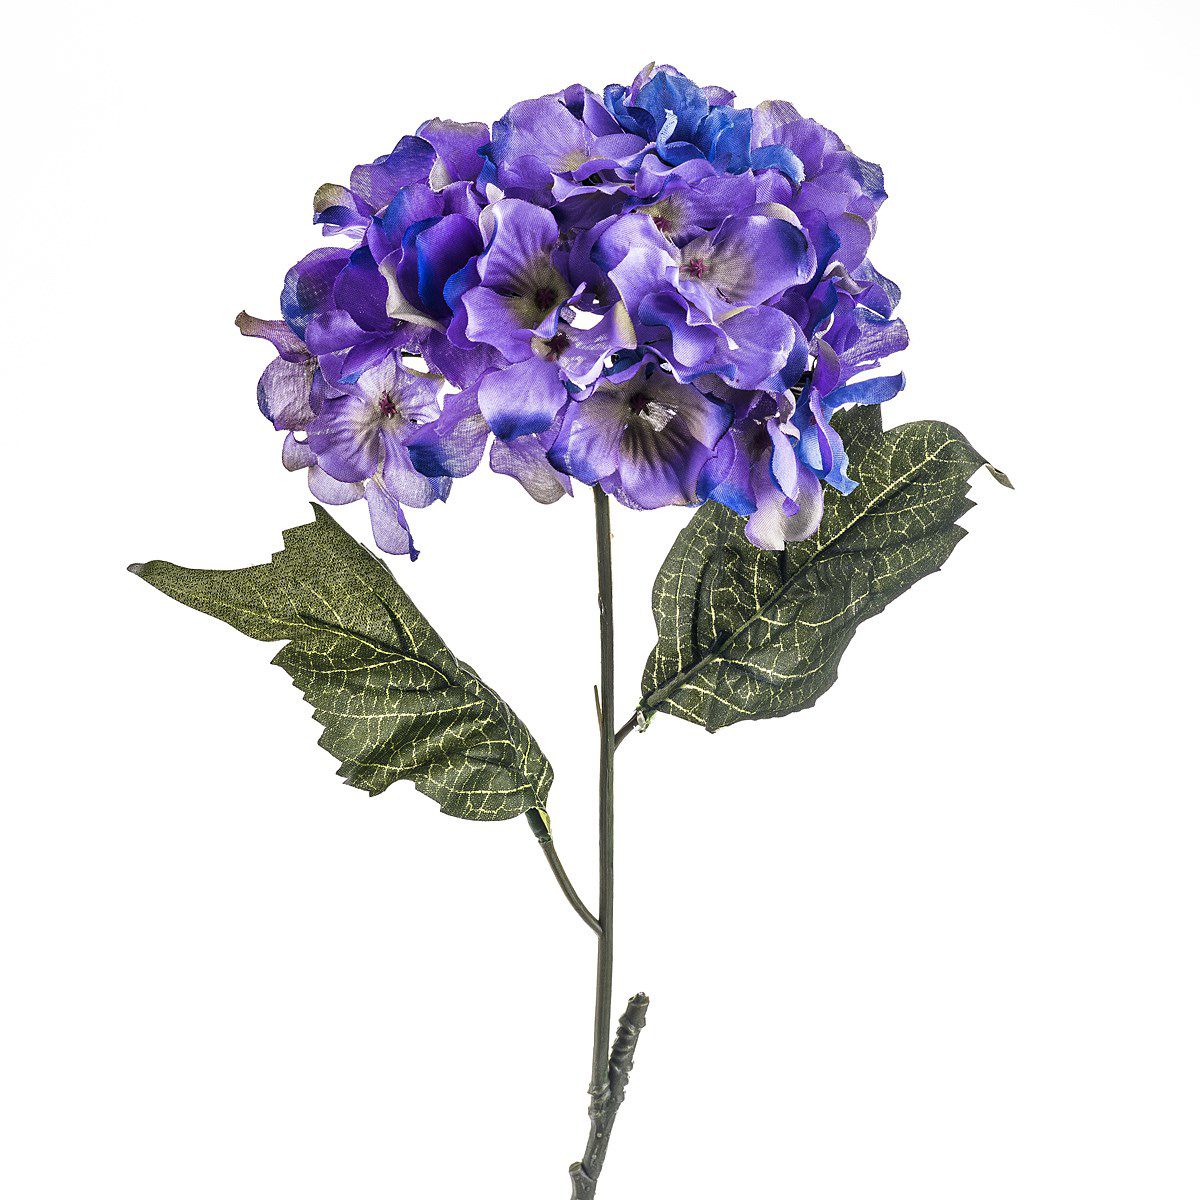 Umělá květina hortenzie modro-fialová, 60 cm, Livo - 4home.cz